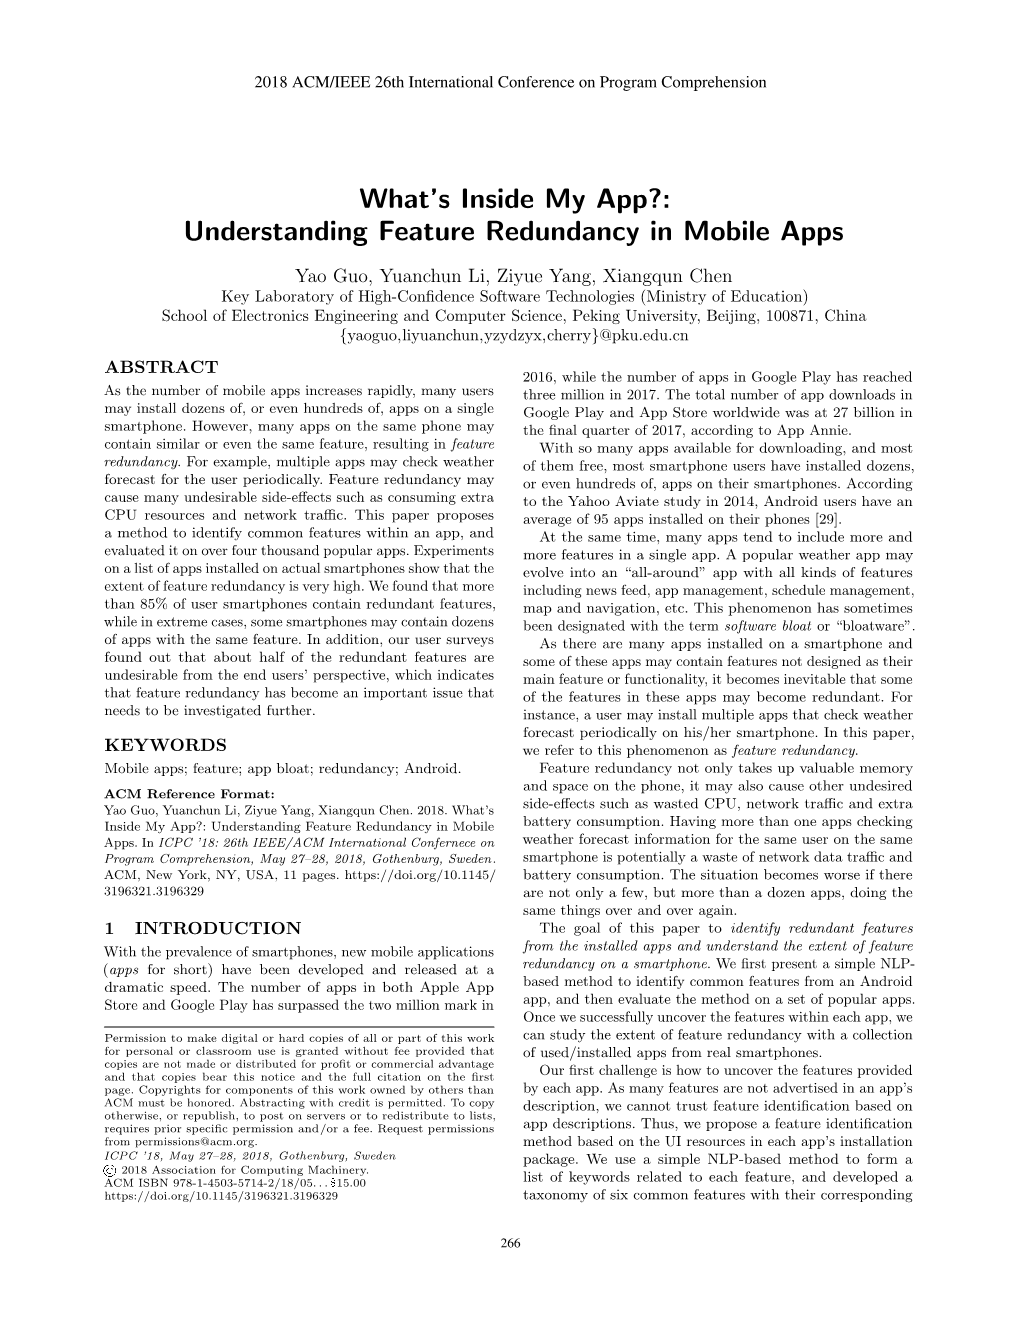 Understanding Feature Redundancy in Mobile Apps